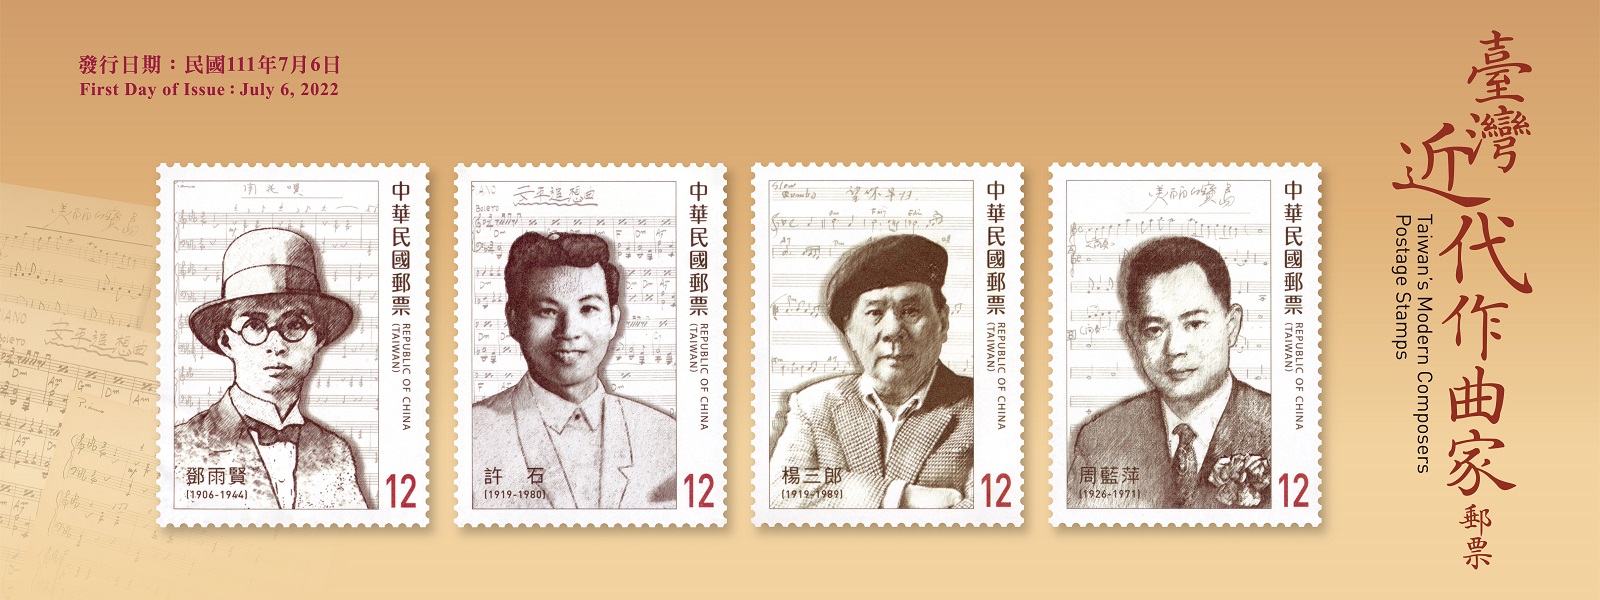 為介紹臺灣近代傑出作曲家，本公司特以鄧雨賢、許石、楊三郎及周藍萍4位先生為主題，發行郵票1套4枚，郵票圖案採作曲家肖像結合其創作之曲譜。